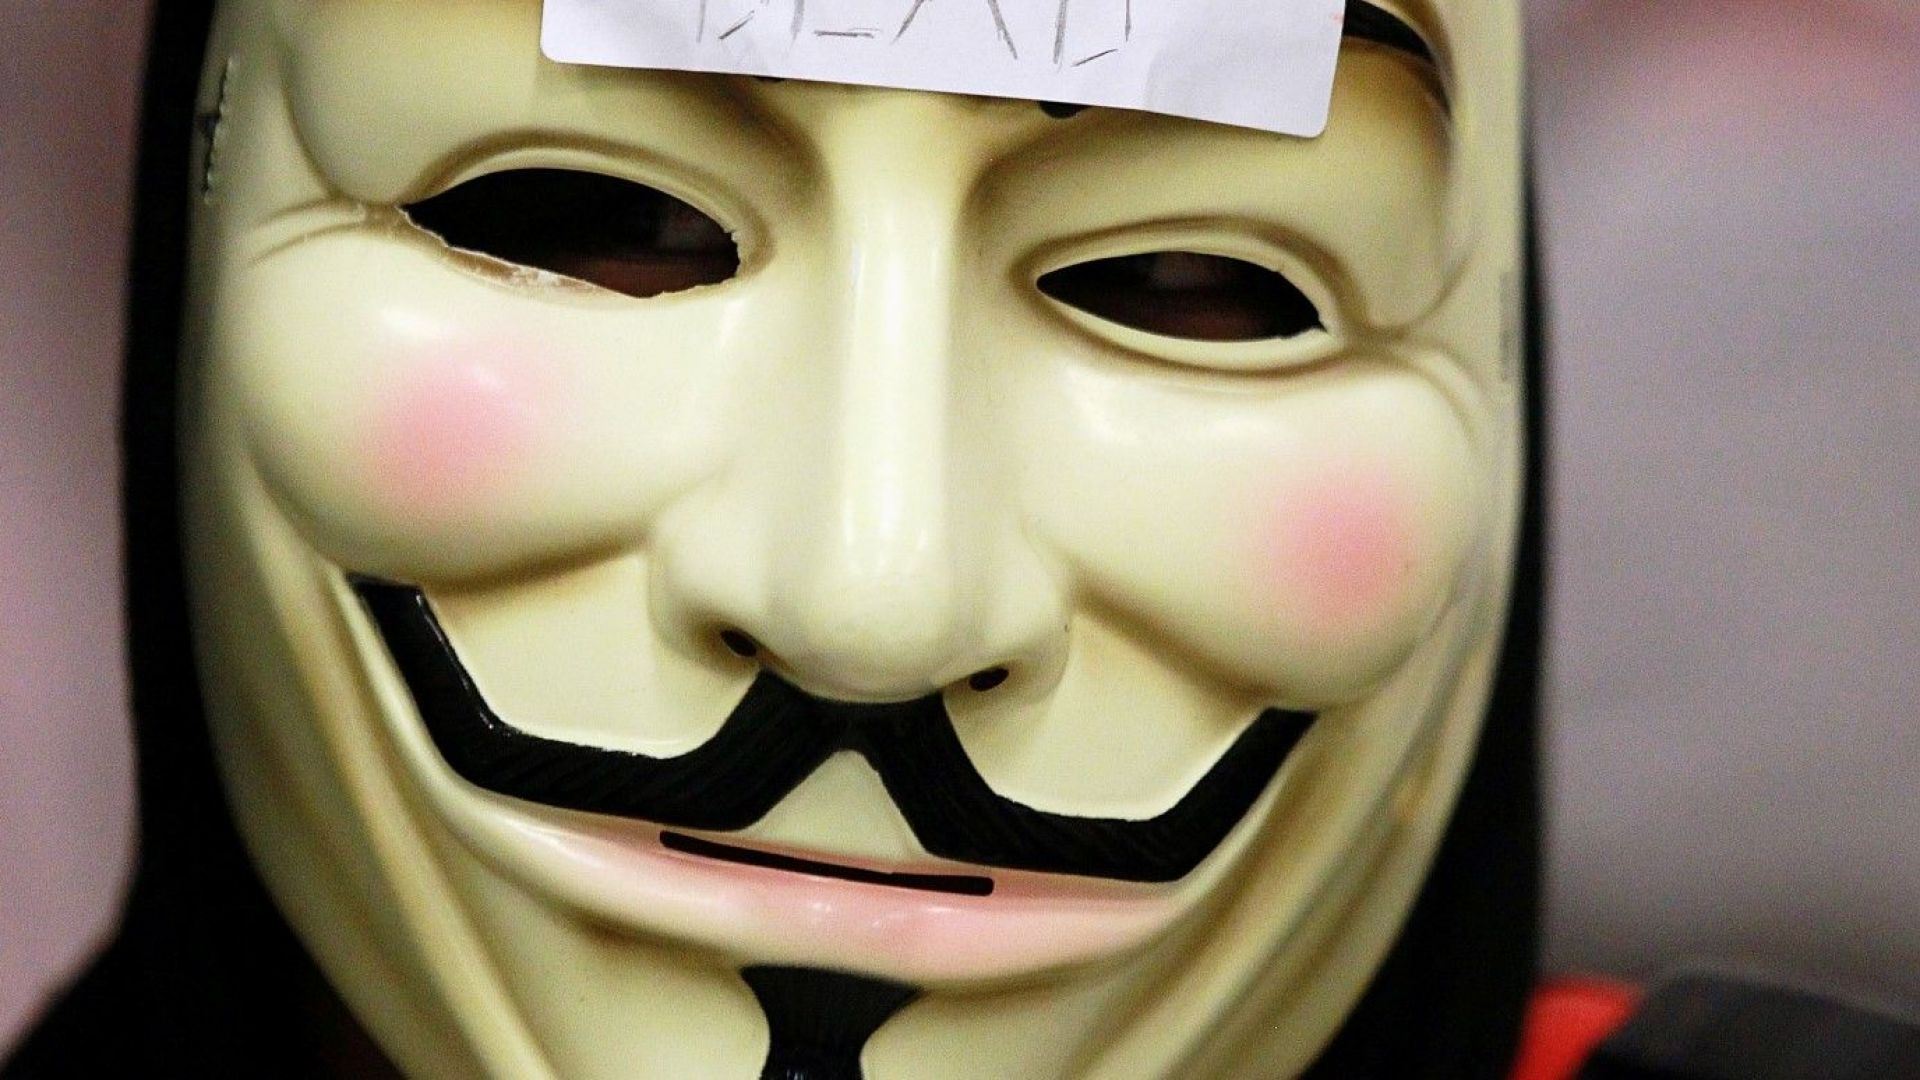 Хакерите от международната група Анонимните (Anonymous) призоваха да бъде освободен